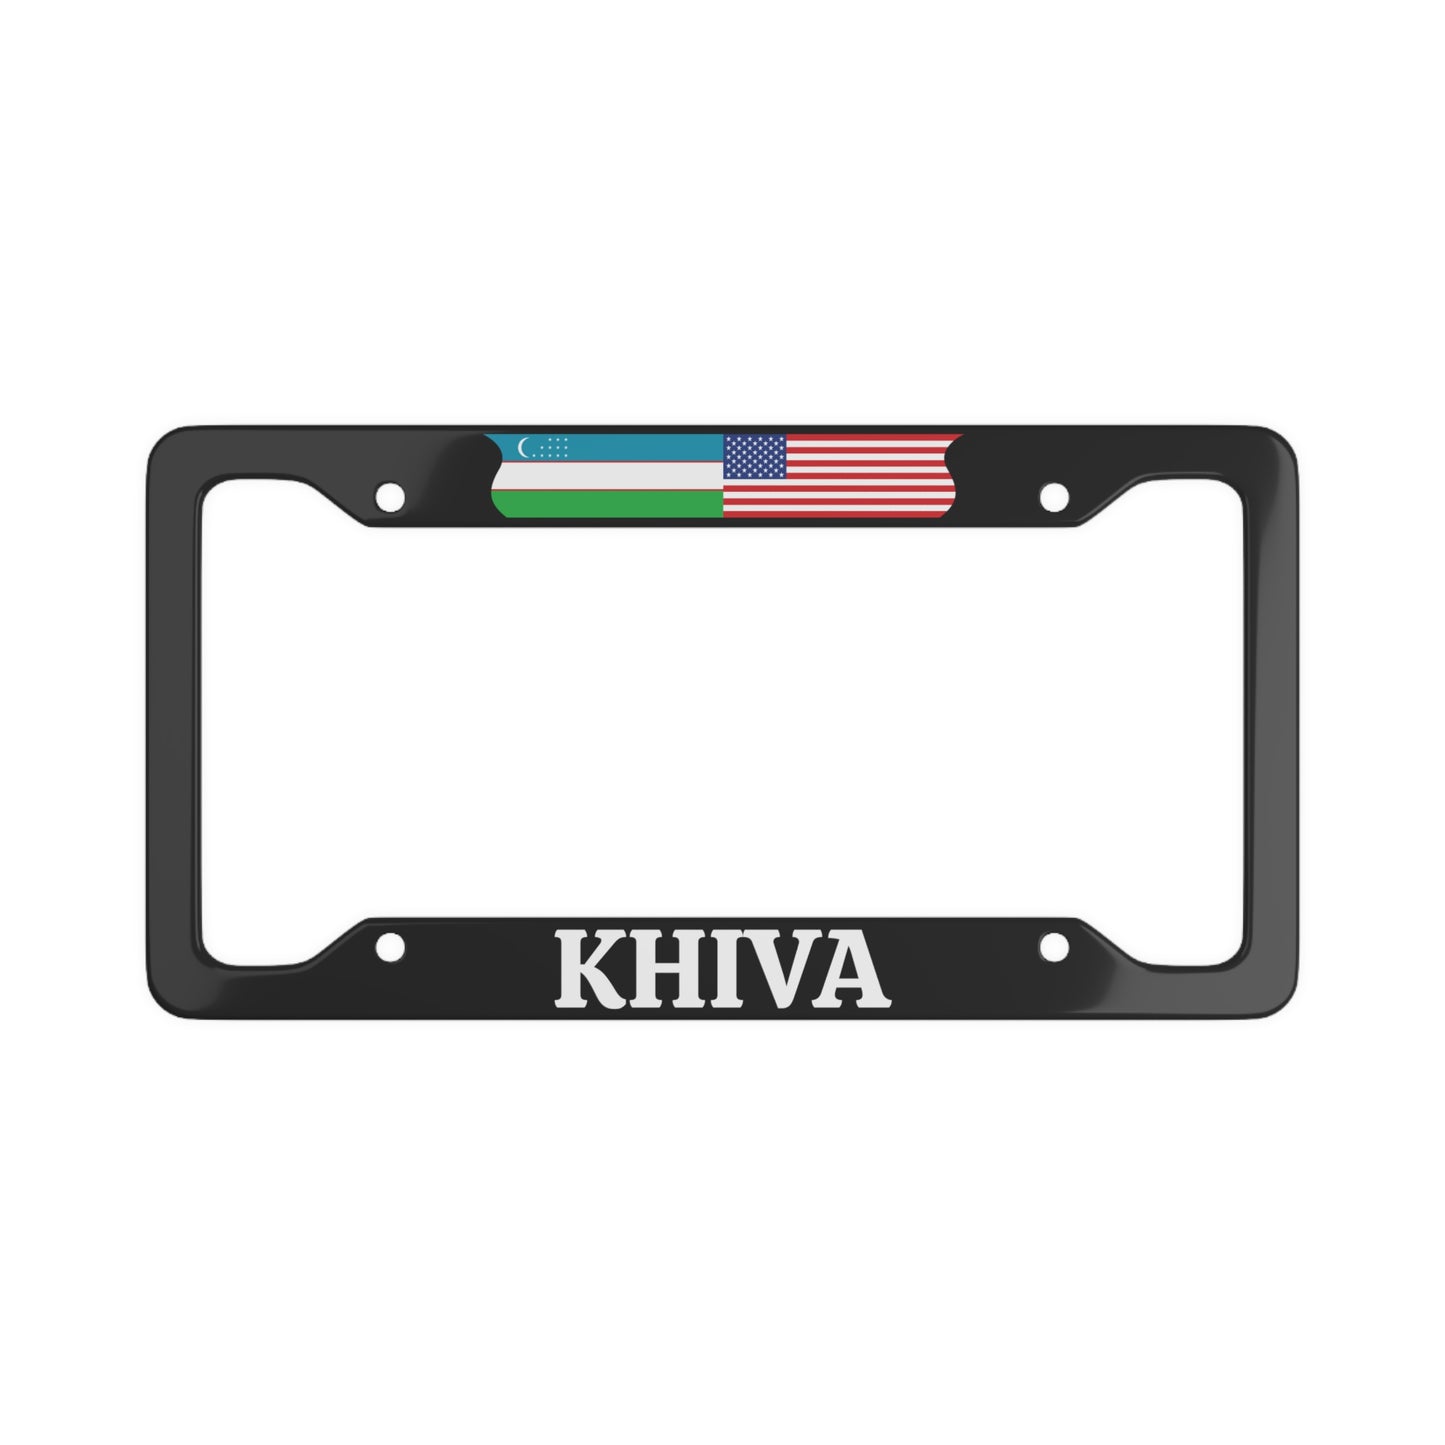 Khiva with flag License Plate Frame